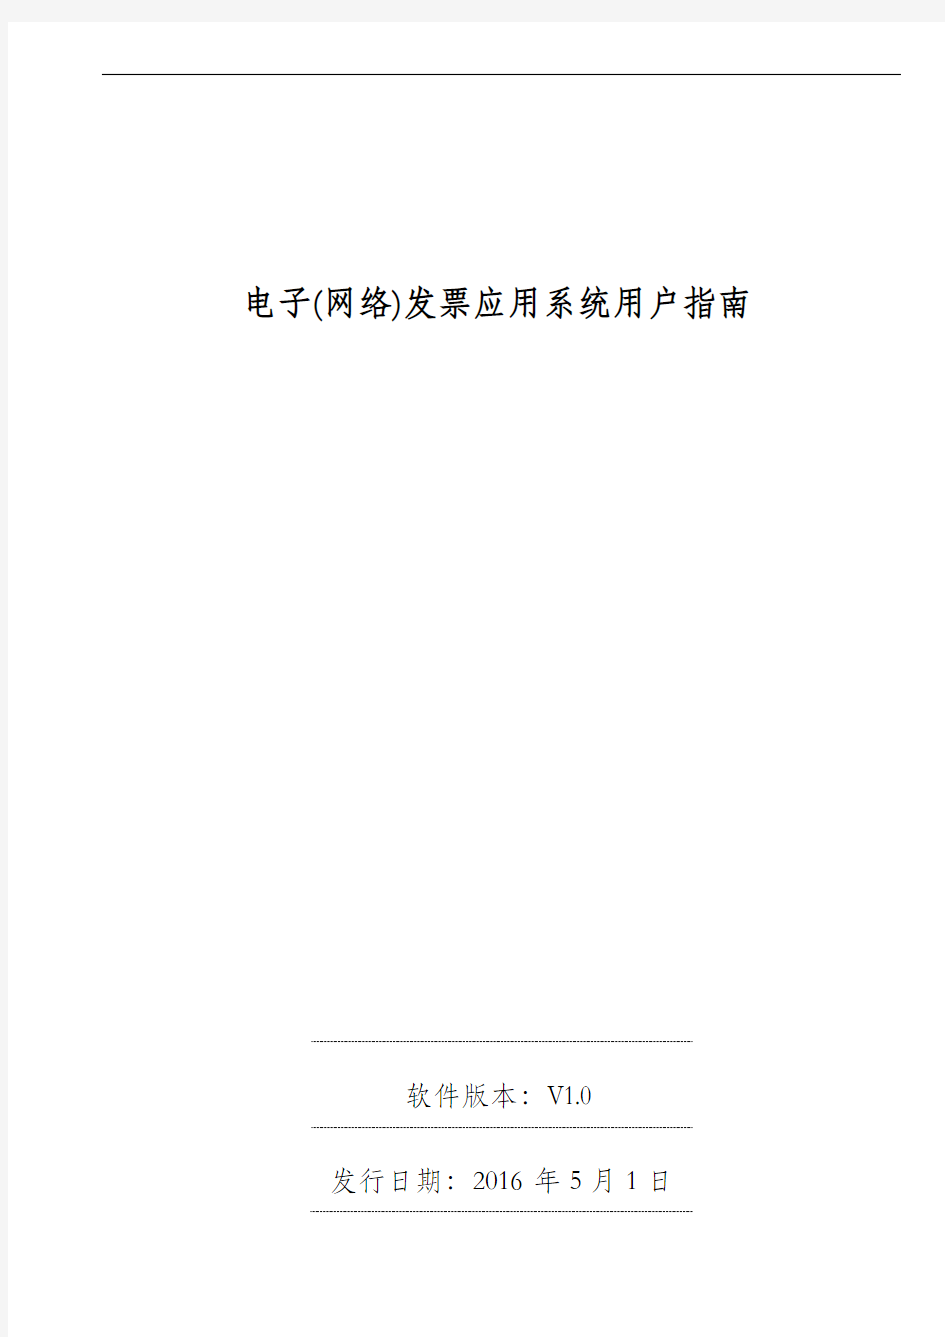 广东省国家税务局电子(网络)发票应用系统用户指南